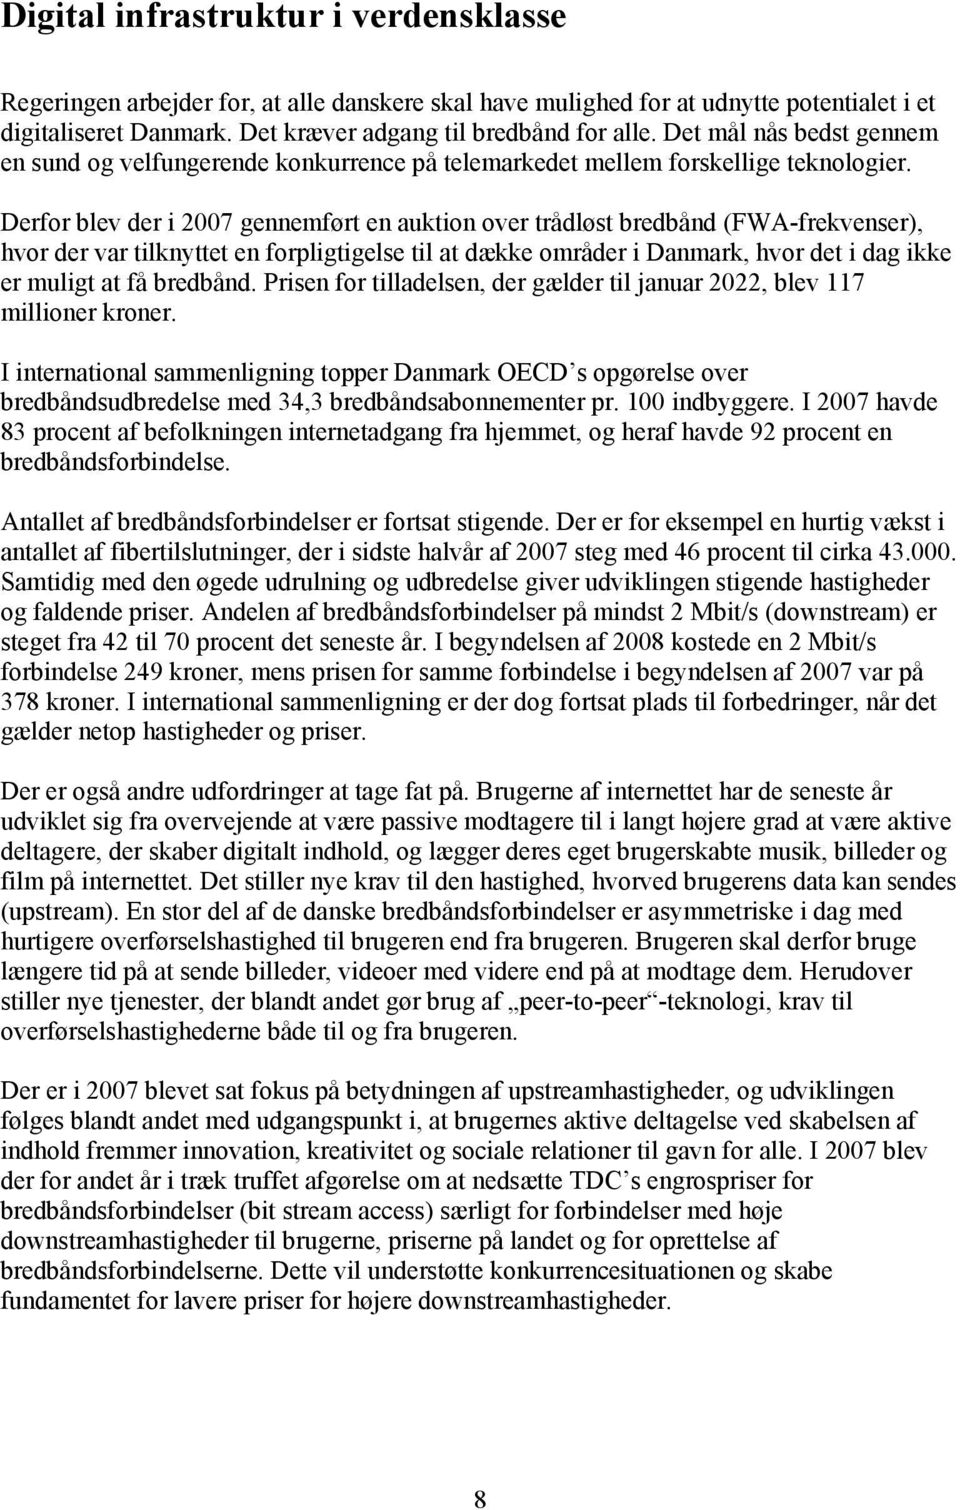 Derfor blev der i 2007 gennemført en auktion over trådløst bredbånd (FWA-frekvenser), hvor der var tilknyttet en forpligtigelse til at dække områder i Danmark, hvor det i dag ikke er muligt at få